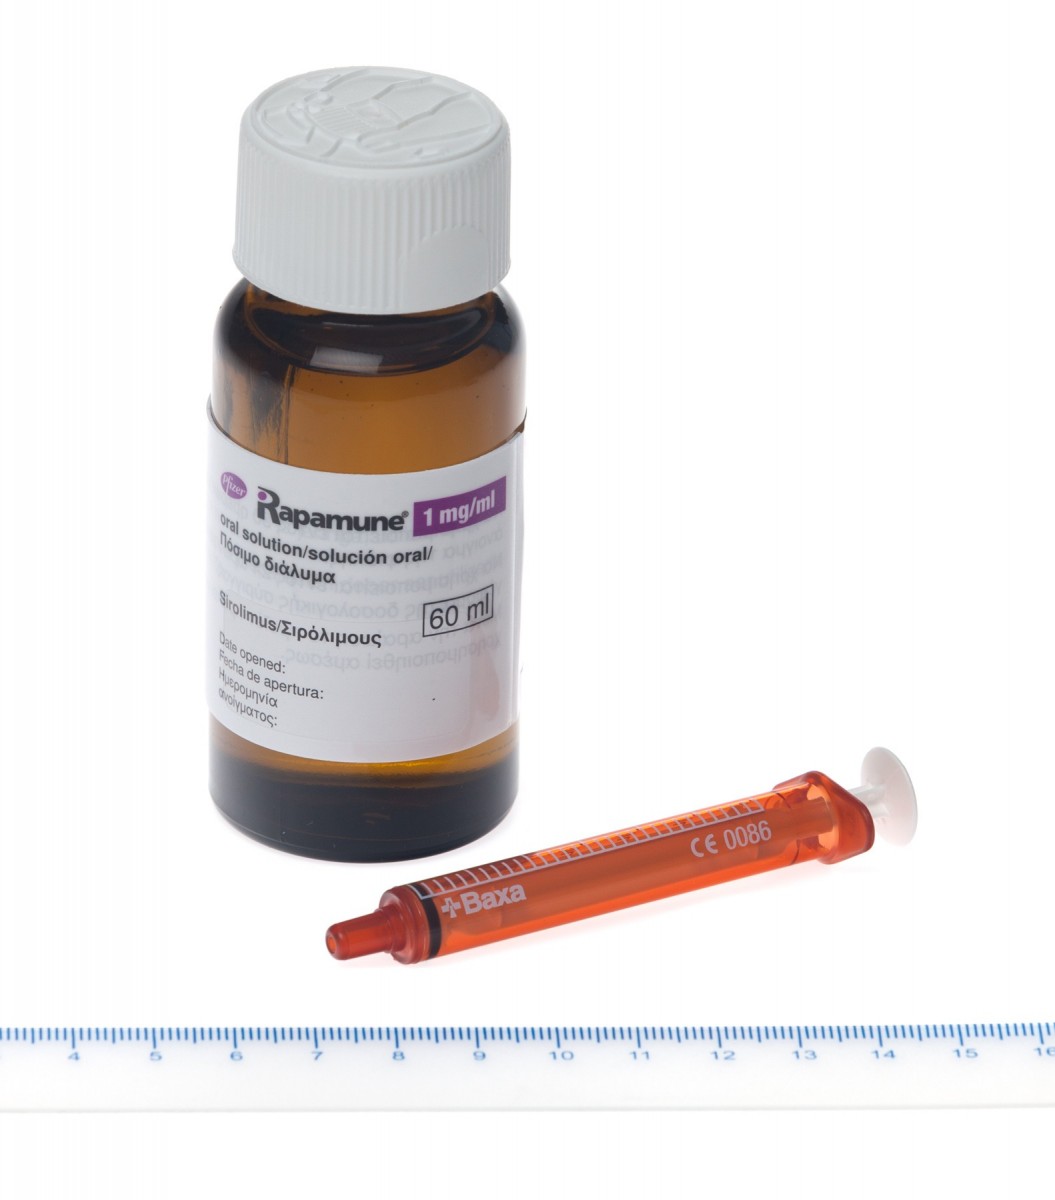 RAPAMUNE 1 mg/ml SOLUCION ORAL, 1 frasco de 60 ml fotografía de la forma farmacéutica.